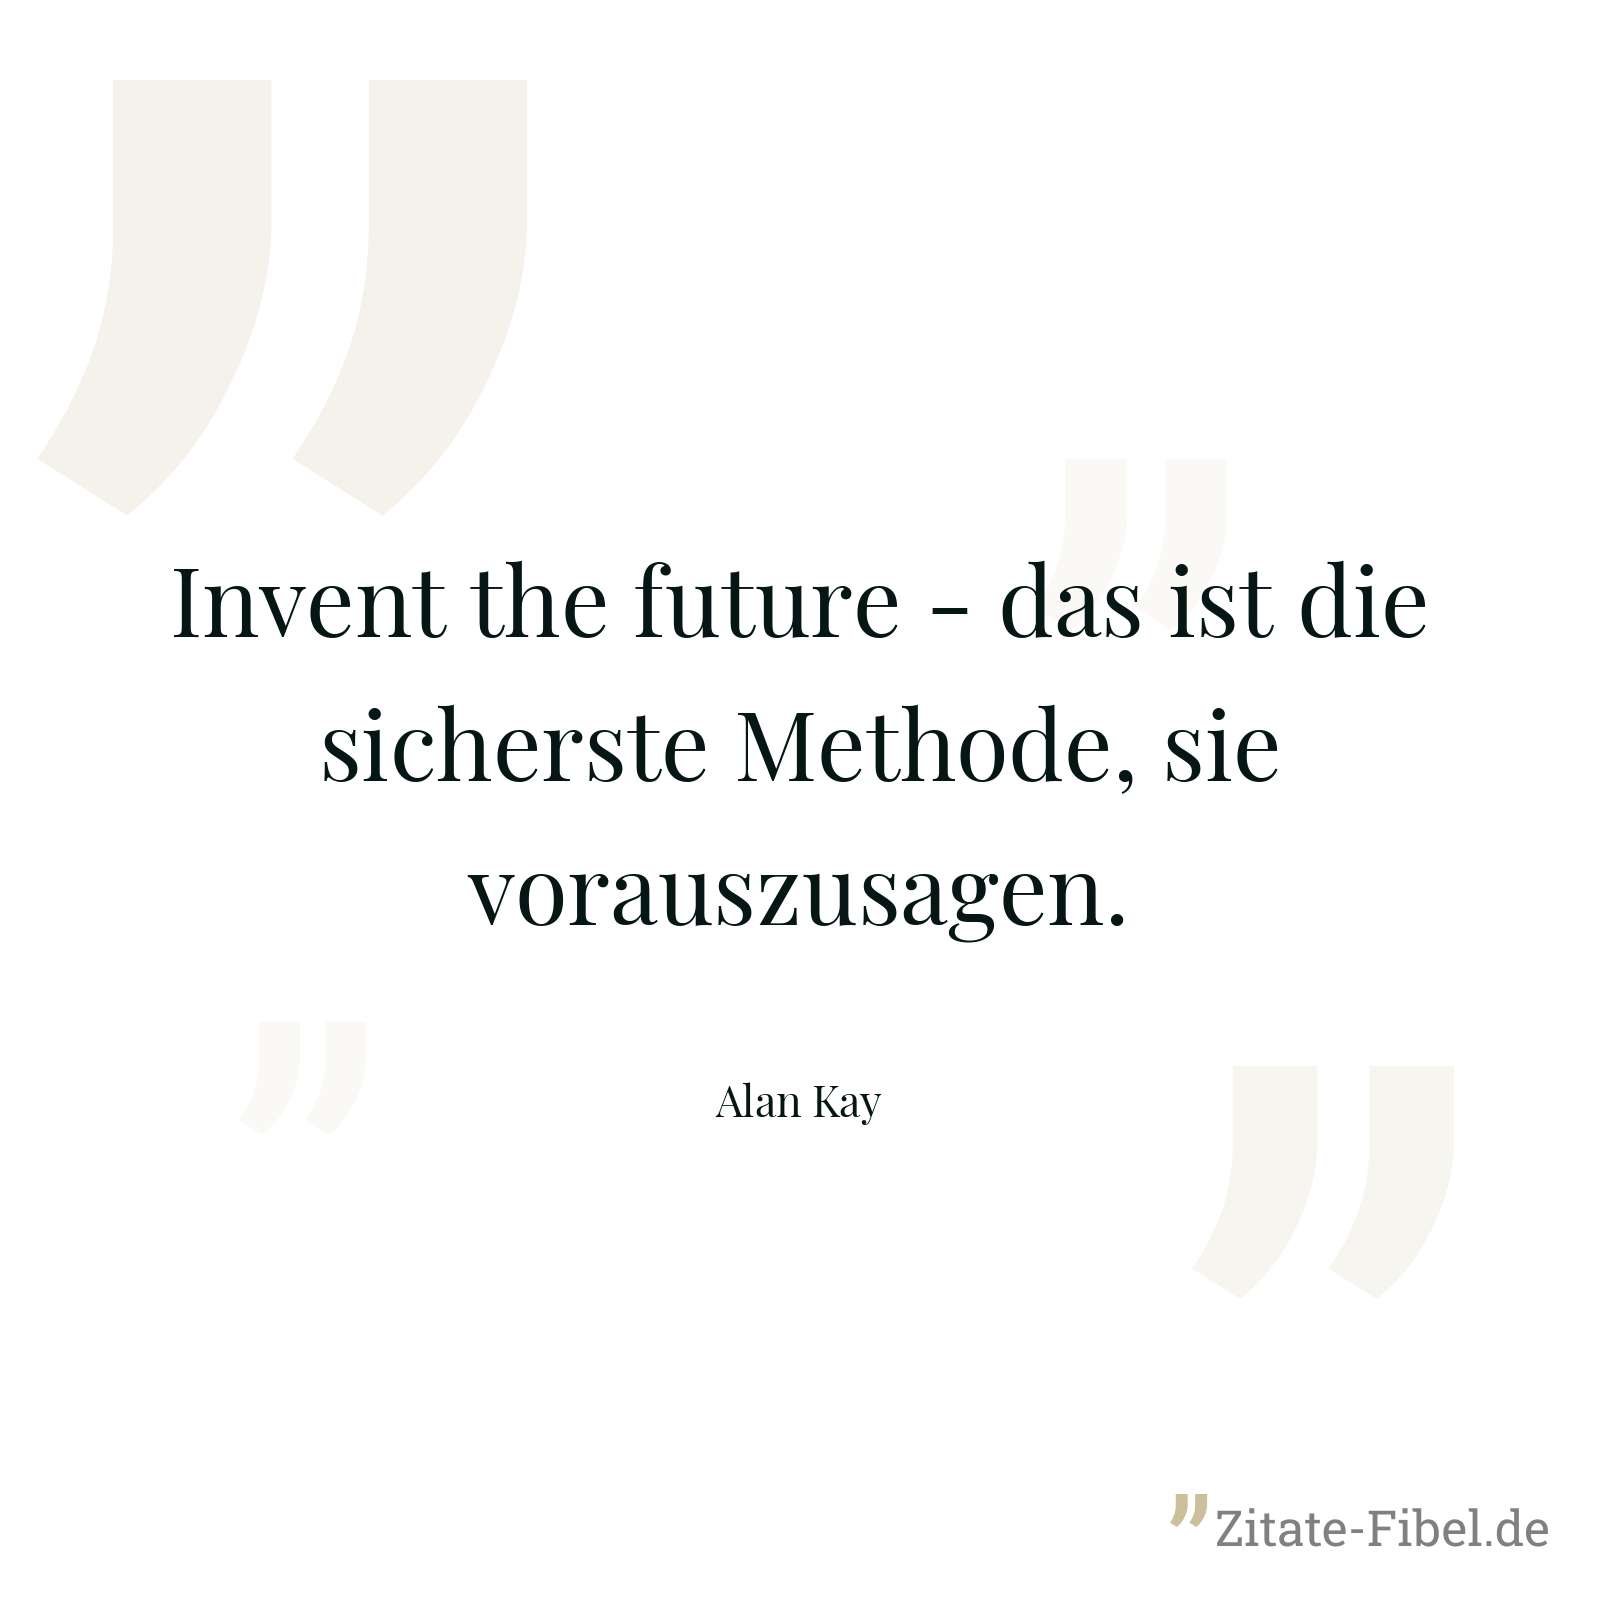 Invent the future - das ist die sicherste Methode, sie vorauszusagen. - Alan Kay